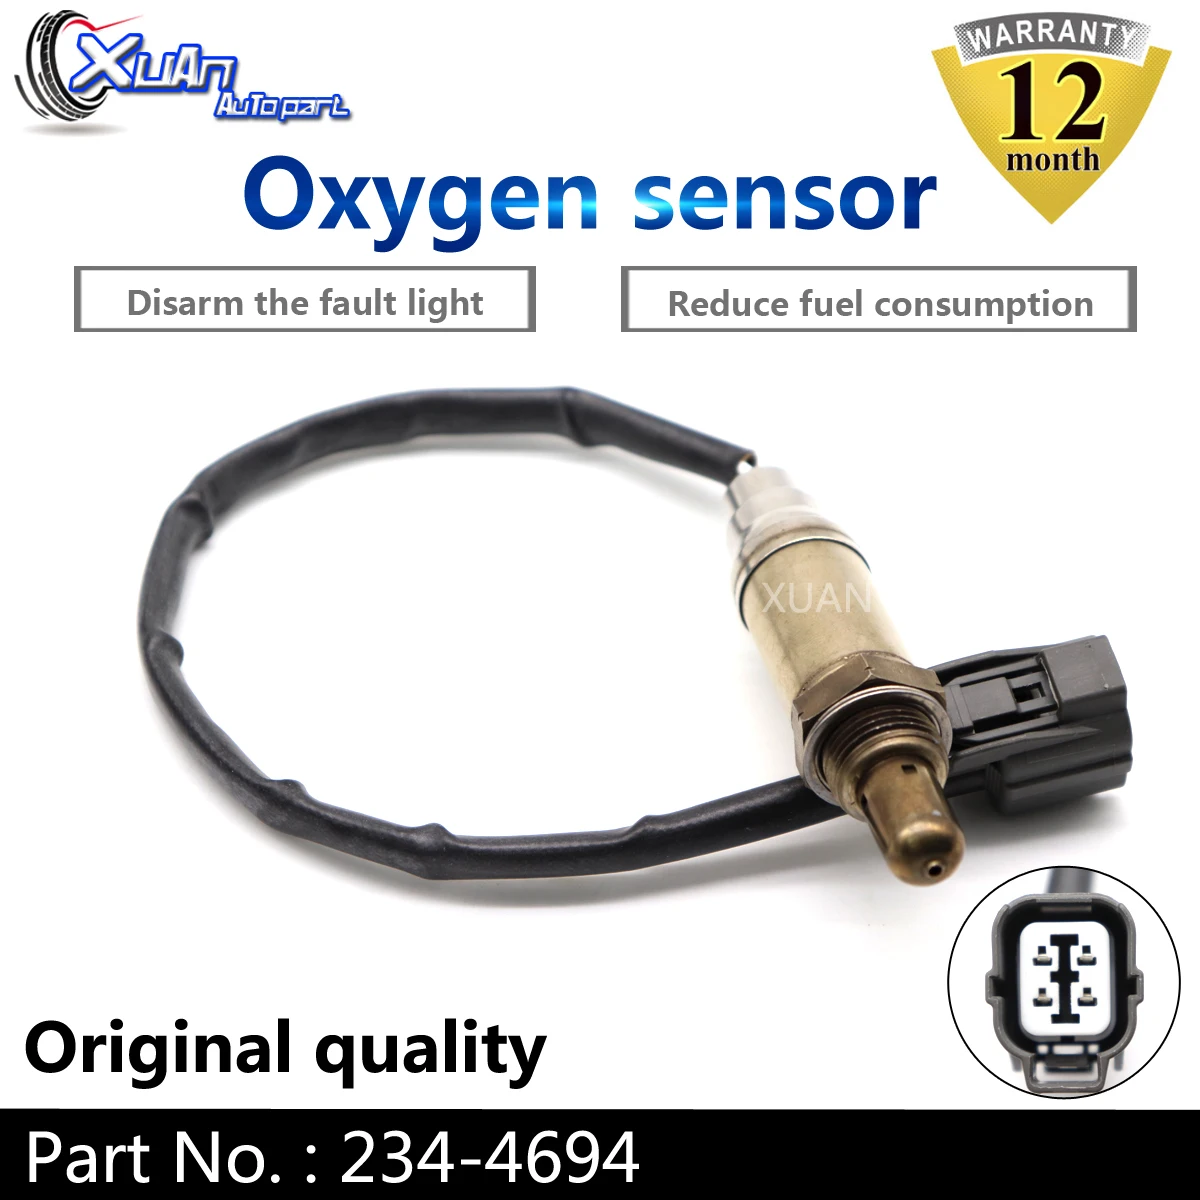 

XUAN Oxygen O2 Lambda Sensor AIR FUEL RATIO SENSOR 234-4694 For Land Rover Discovery 4.0L 4.6L 1999-2004 Upstream Downstream